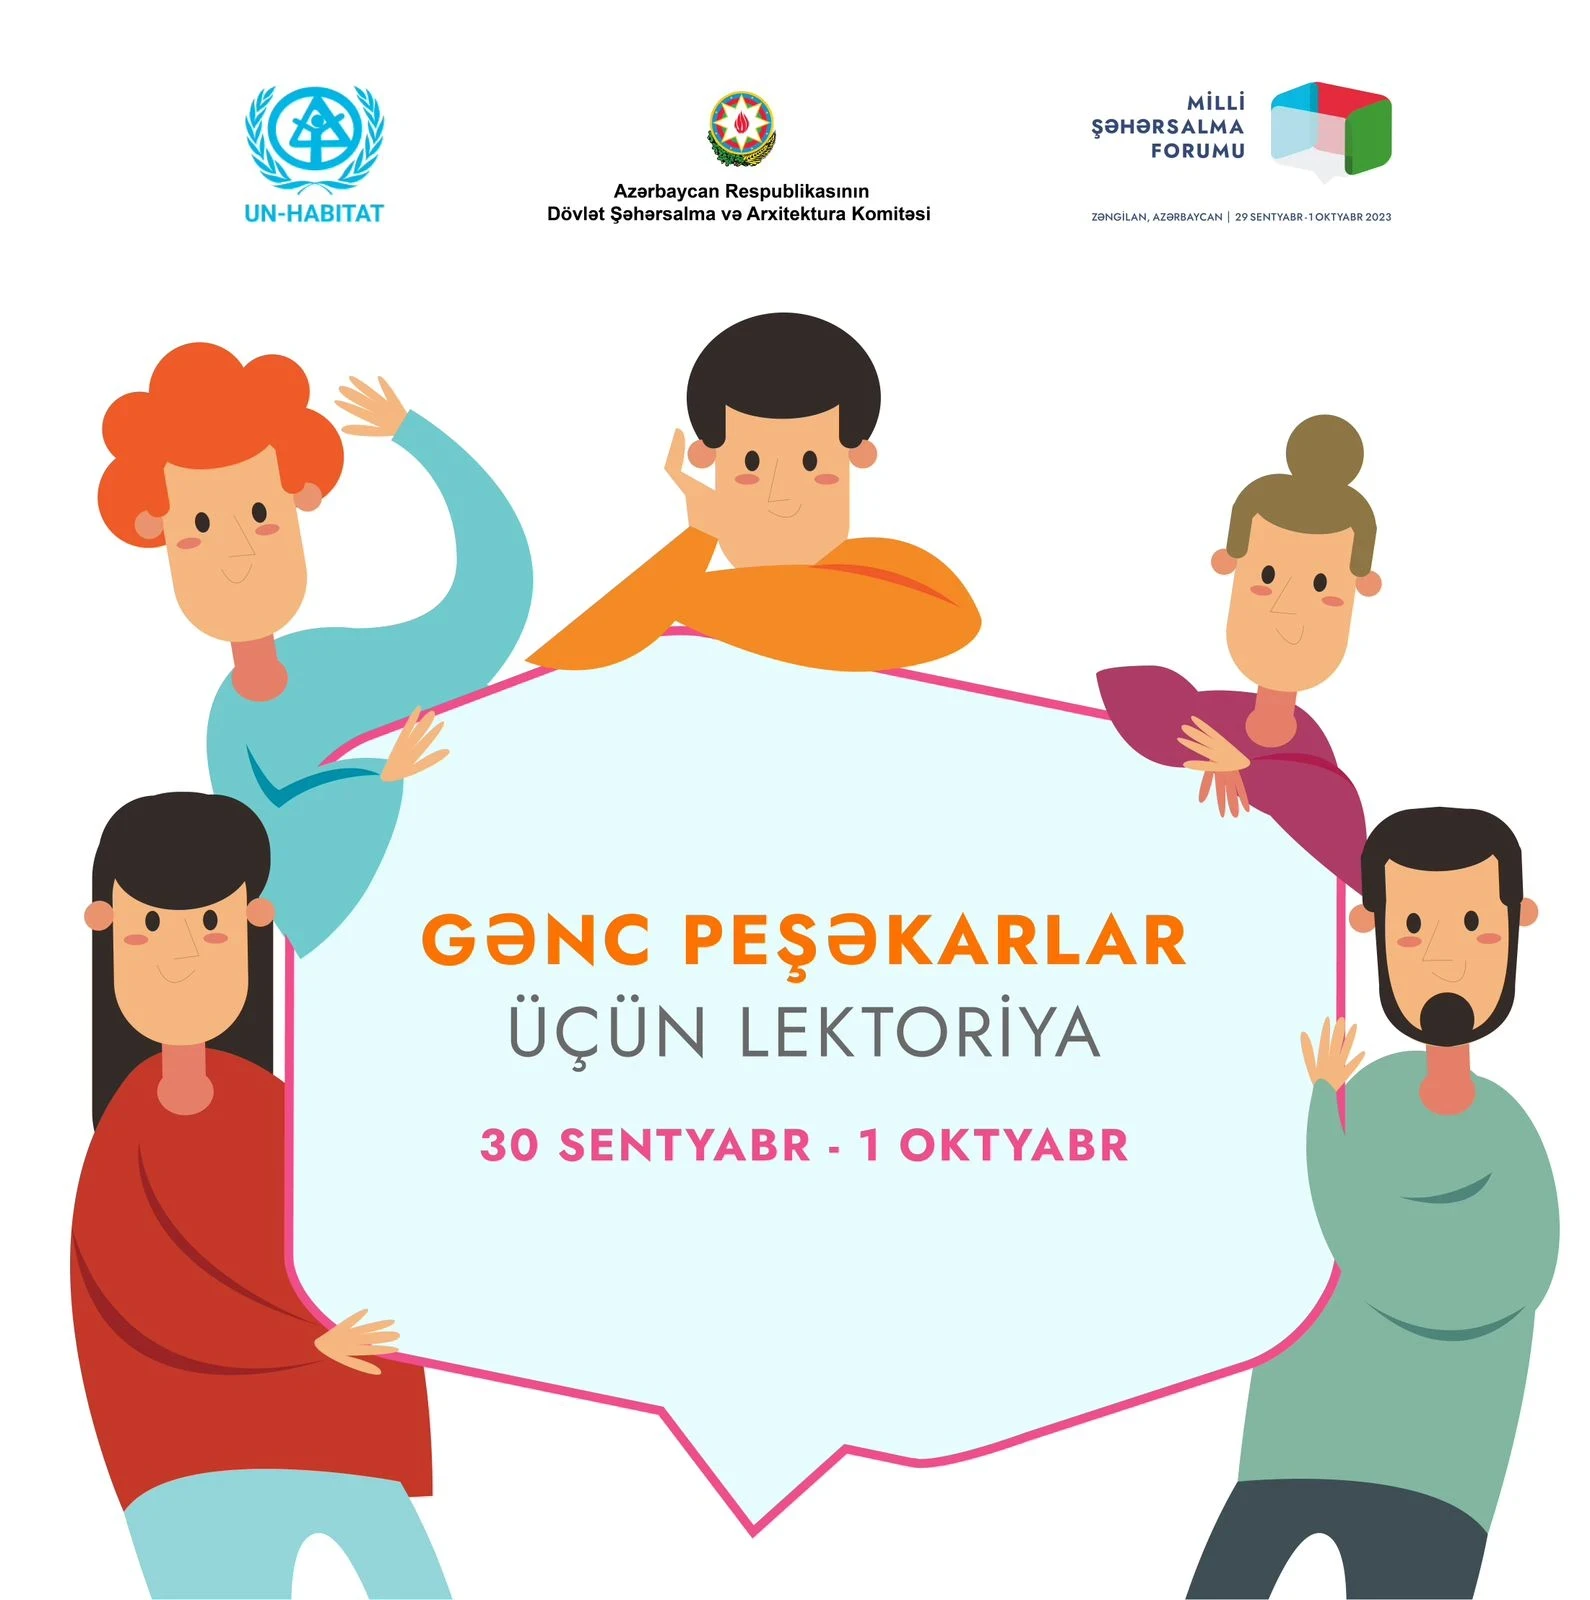 В рамках 2-го Азербайджанского Национального Градостроительного форума будет проведена лекция для молодых специалистов!